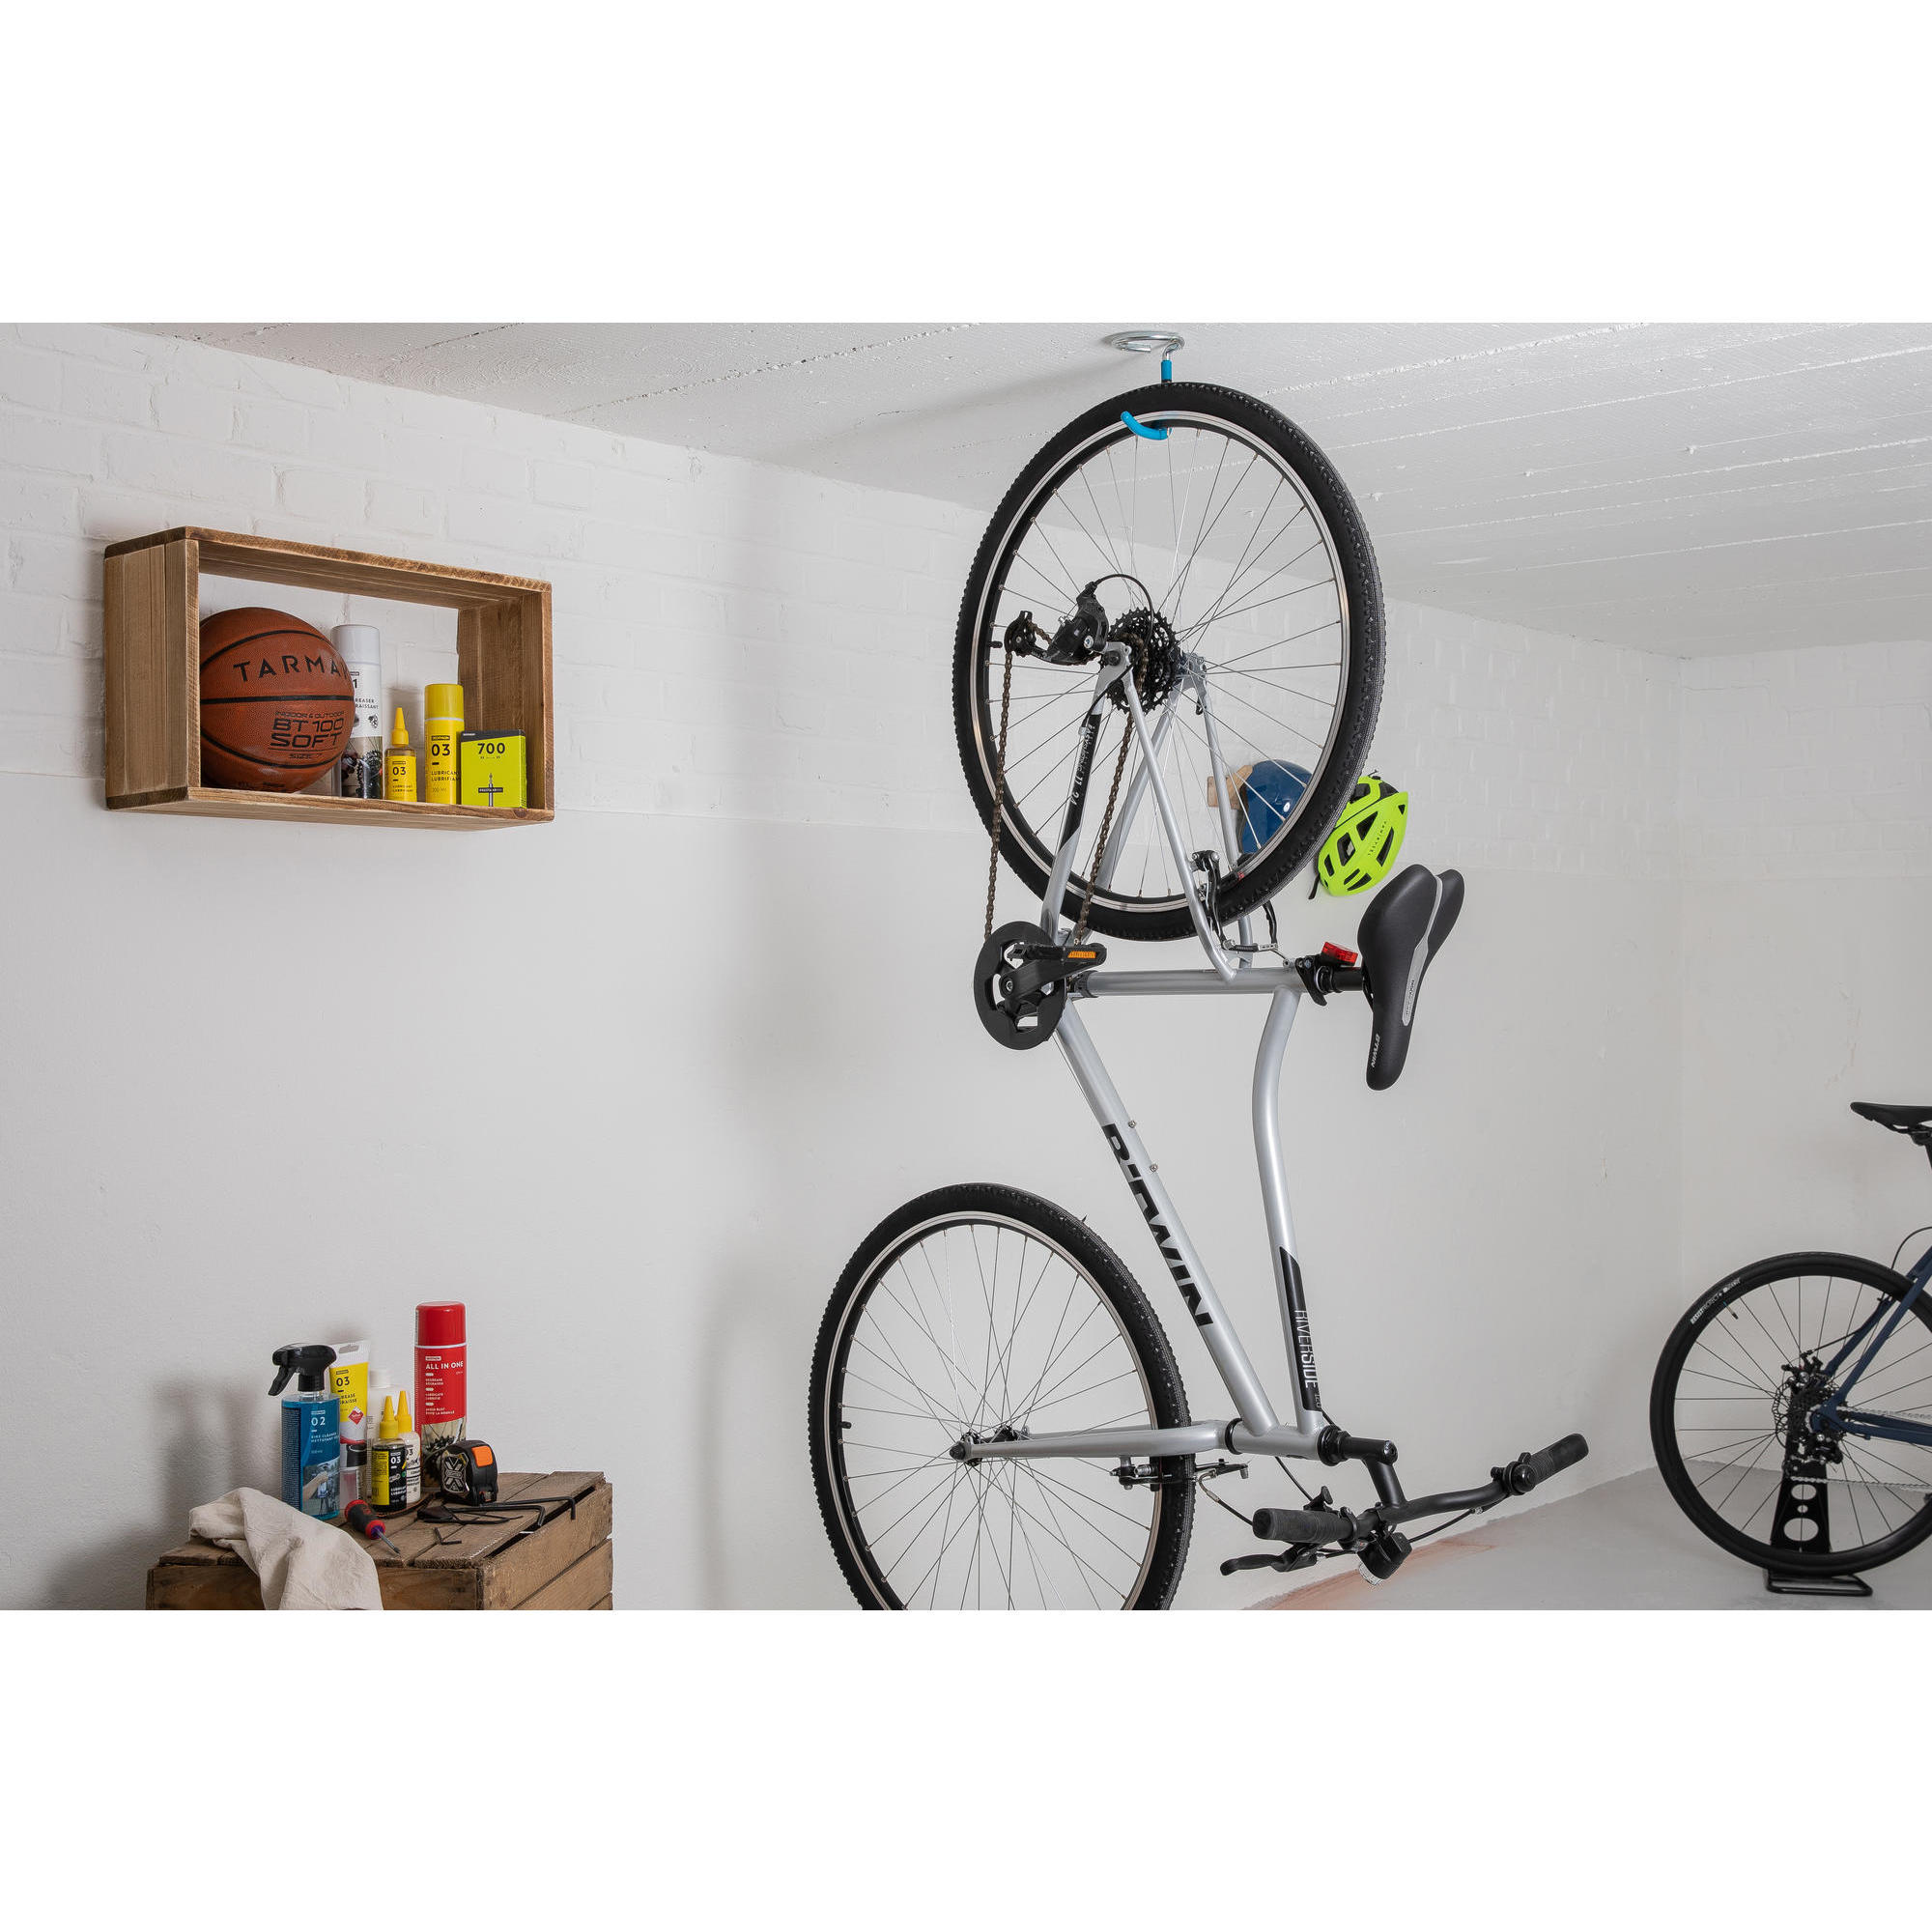 supporto-da-muro-e-soffitto-1-bici.jpg